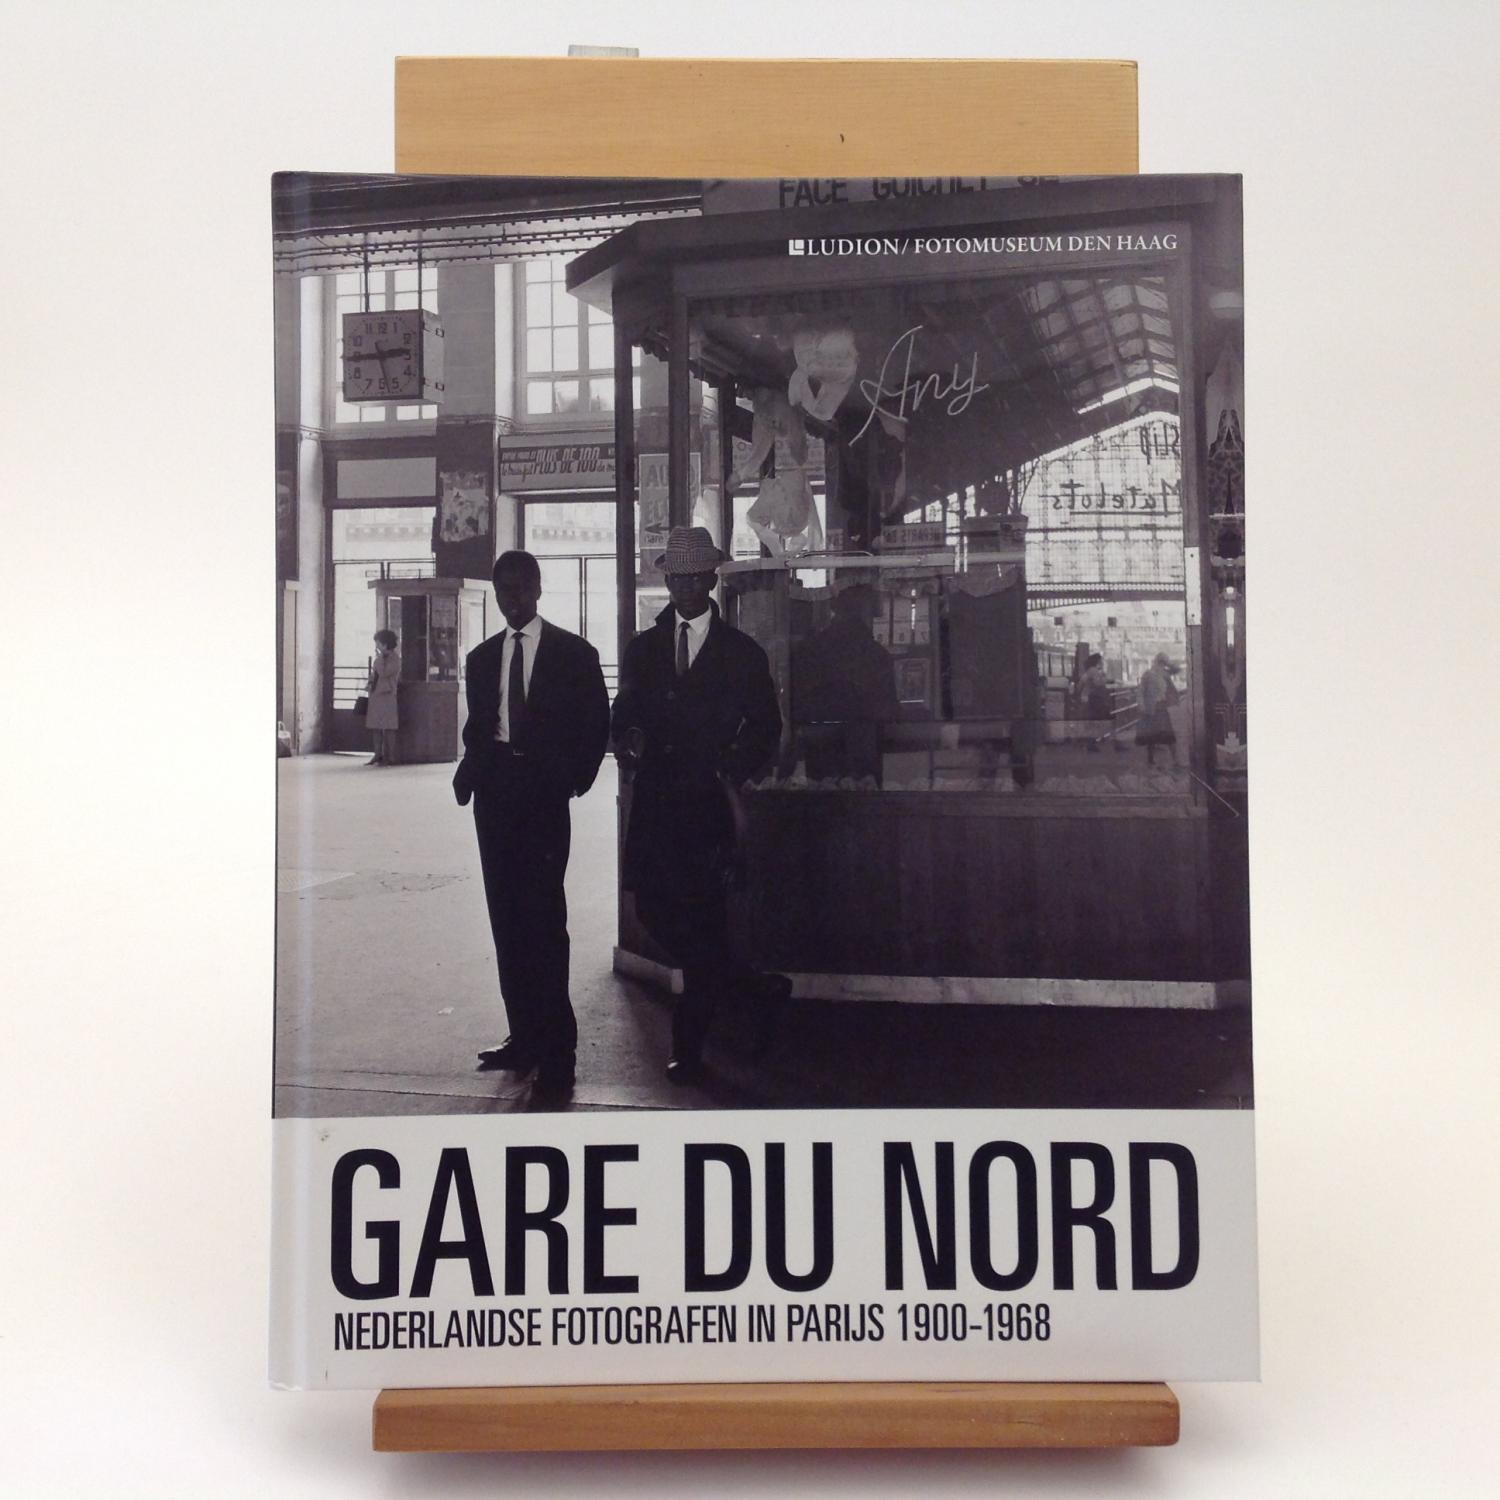 Gare du Nord: Nederlandse fotografen in Parijs 1900-1968